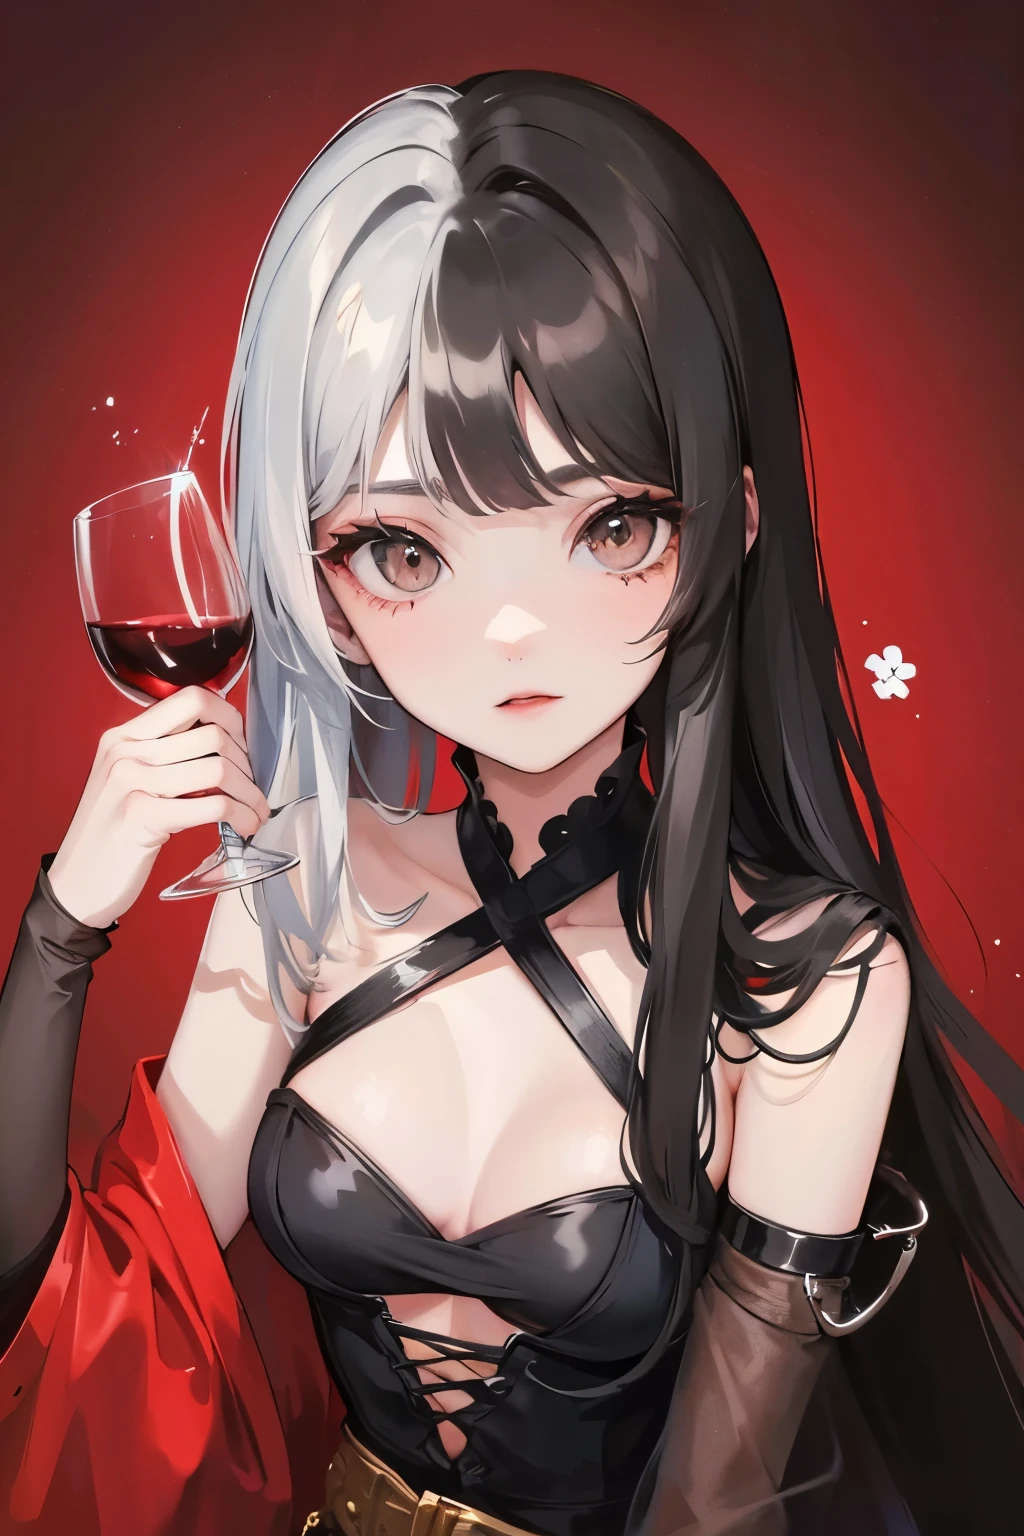 linda garota de olhos cinzentos com penteado longo dividido, cabelo preto-prateado e segurando uma taça de vinho em uma das mãos, fundo de flores vermelhas, grande baú
